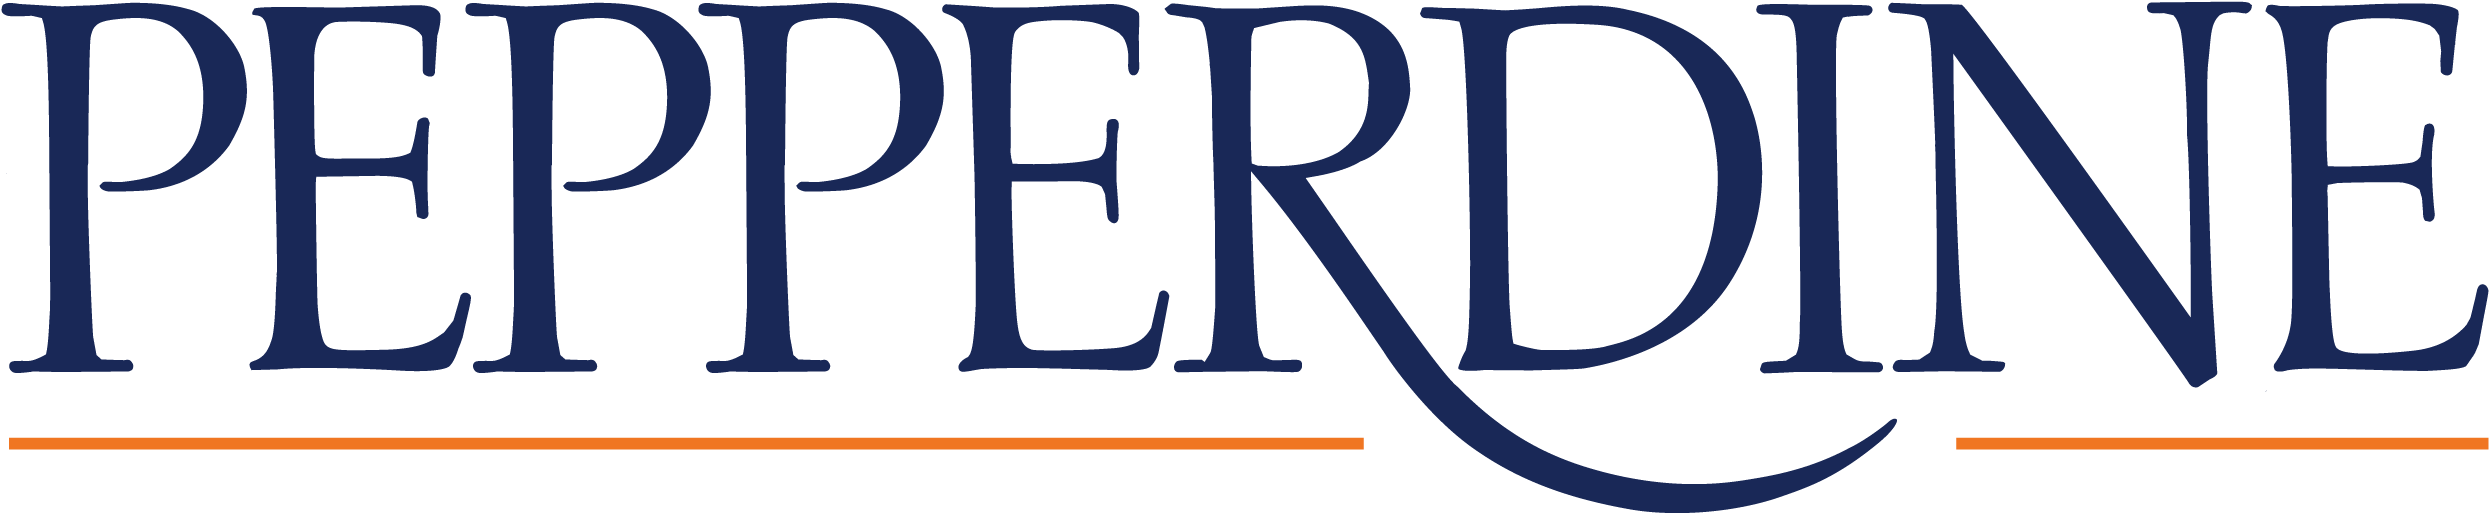 2018 Graduate Colleges - Pepperdine University Logo (2522x547)